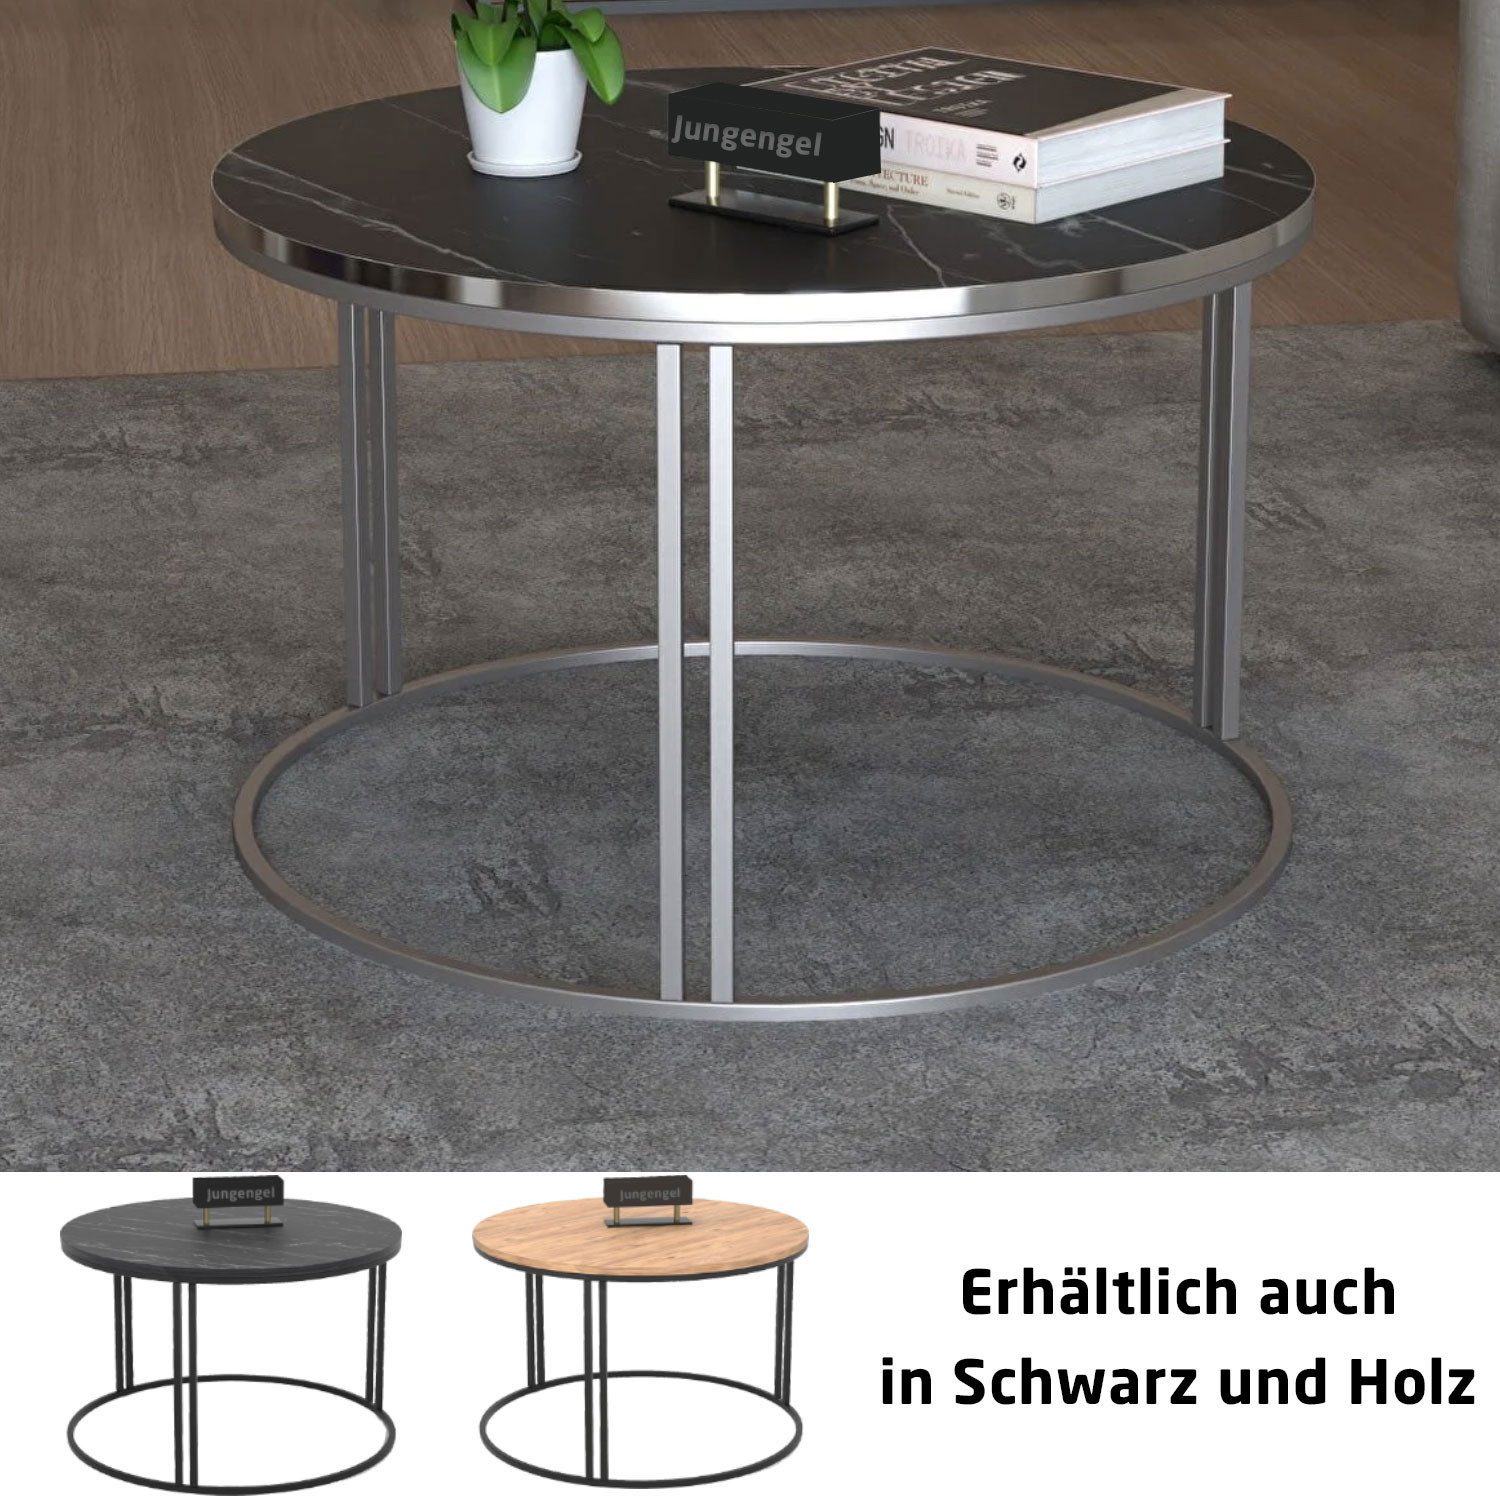 Jungengel Couchtisch Modern 3x Designs Marmor Holz Tisch Beilagentisch Wohnzimmertisch